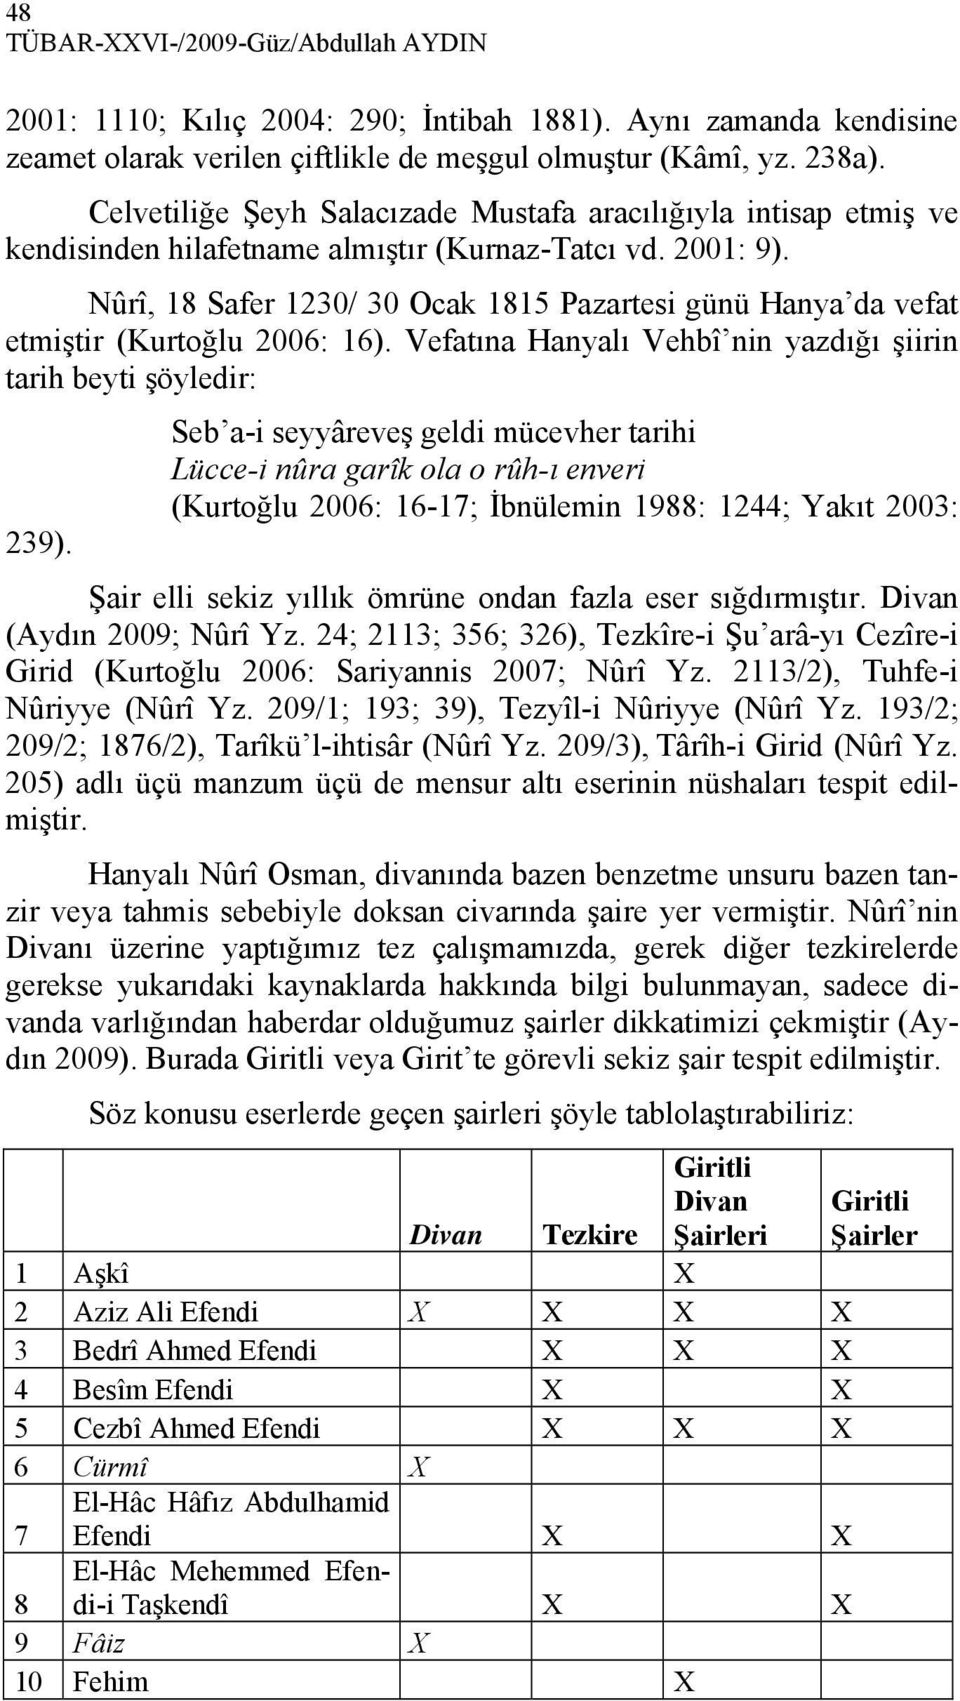 Nûrî, 18 Safer 1230/ 30 Ocak 1815 Pazartesi günü Hanya da vefat etmiştir (Kurtoğlu 2006: 16). Vefatına Hanyalı Vehbî nin yazdığı şiirin tarih beyti şöyledir: 239).